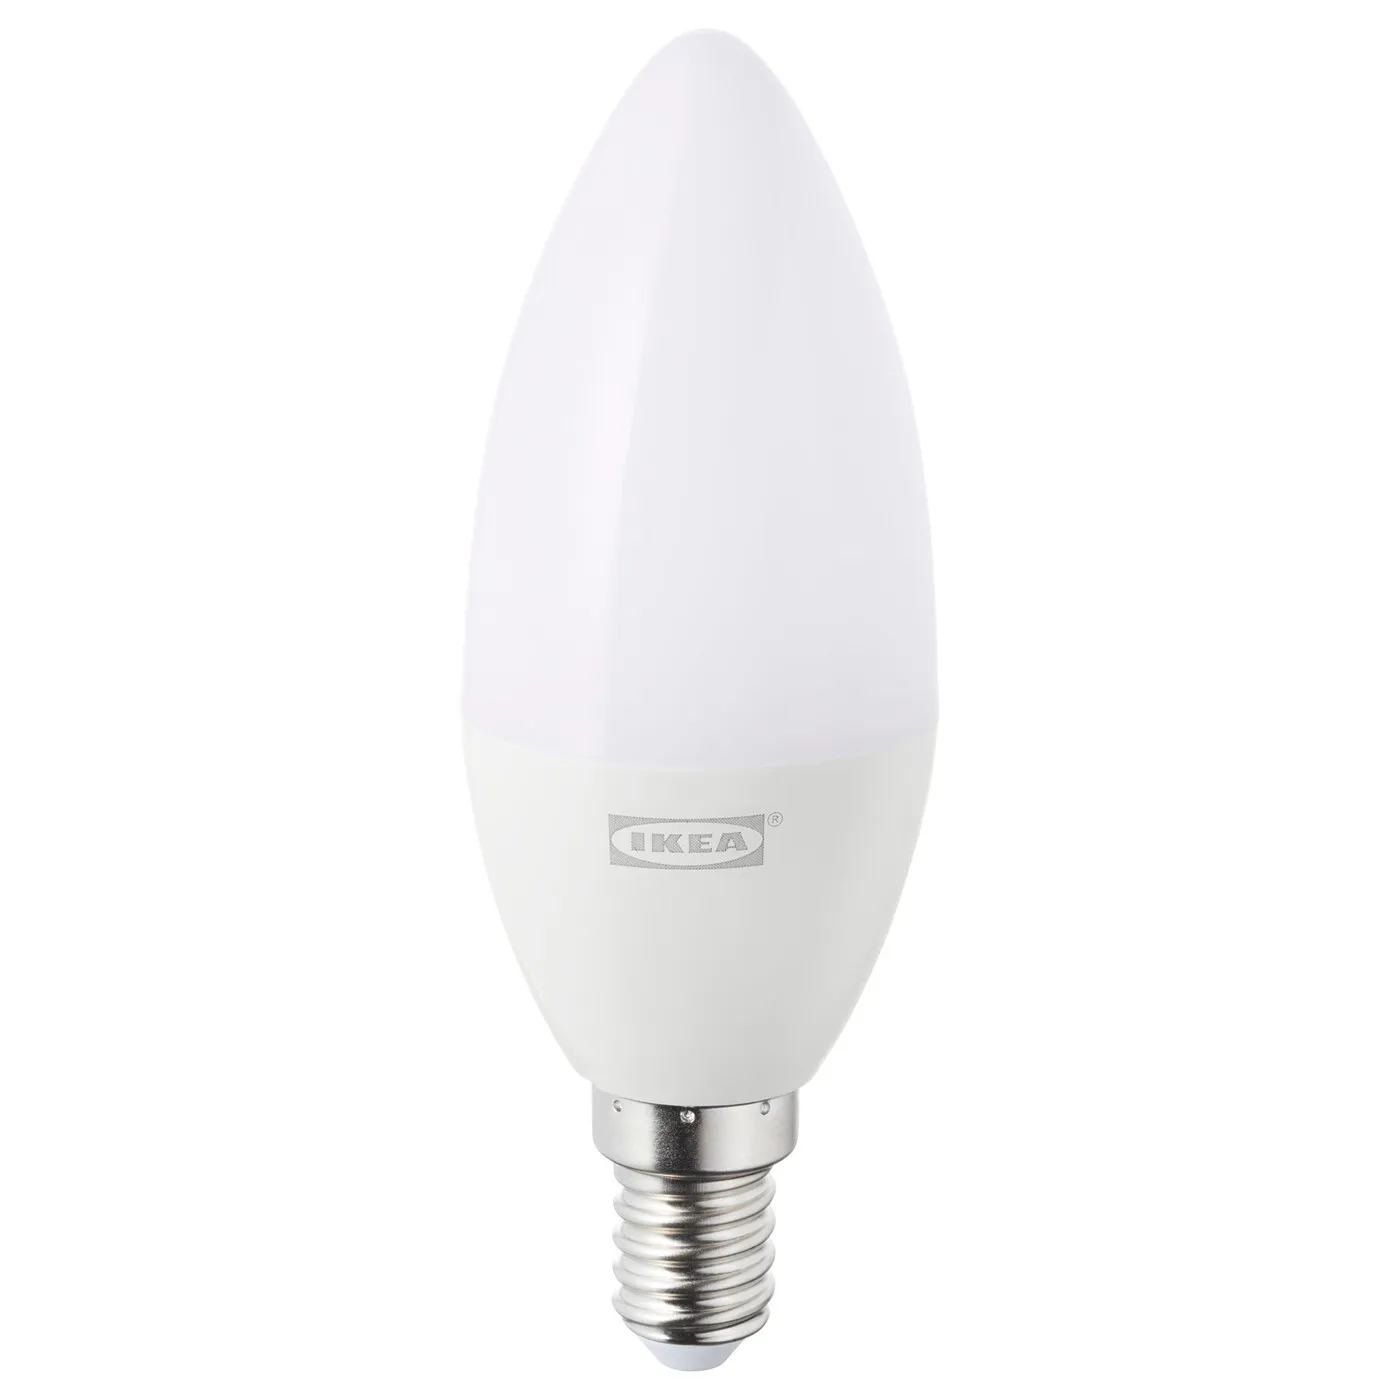 Tradfri LED bulb E12 400 lumen, wireless dimmable warm white, chandelier opal